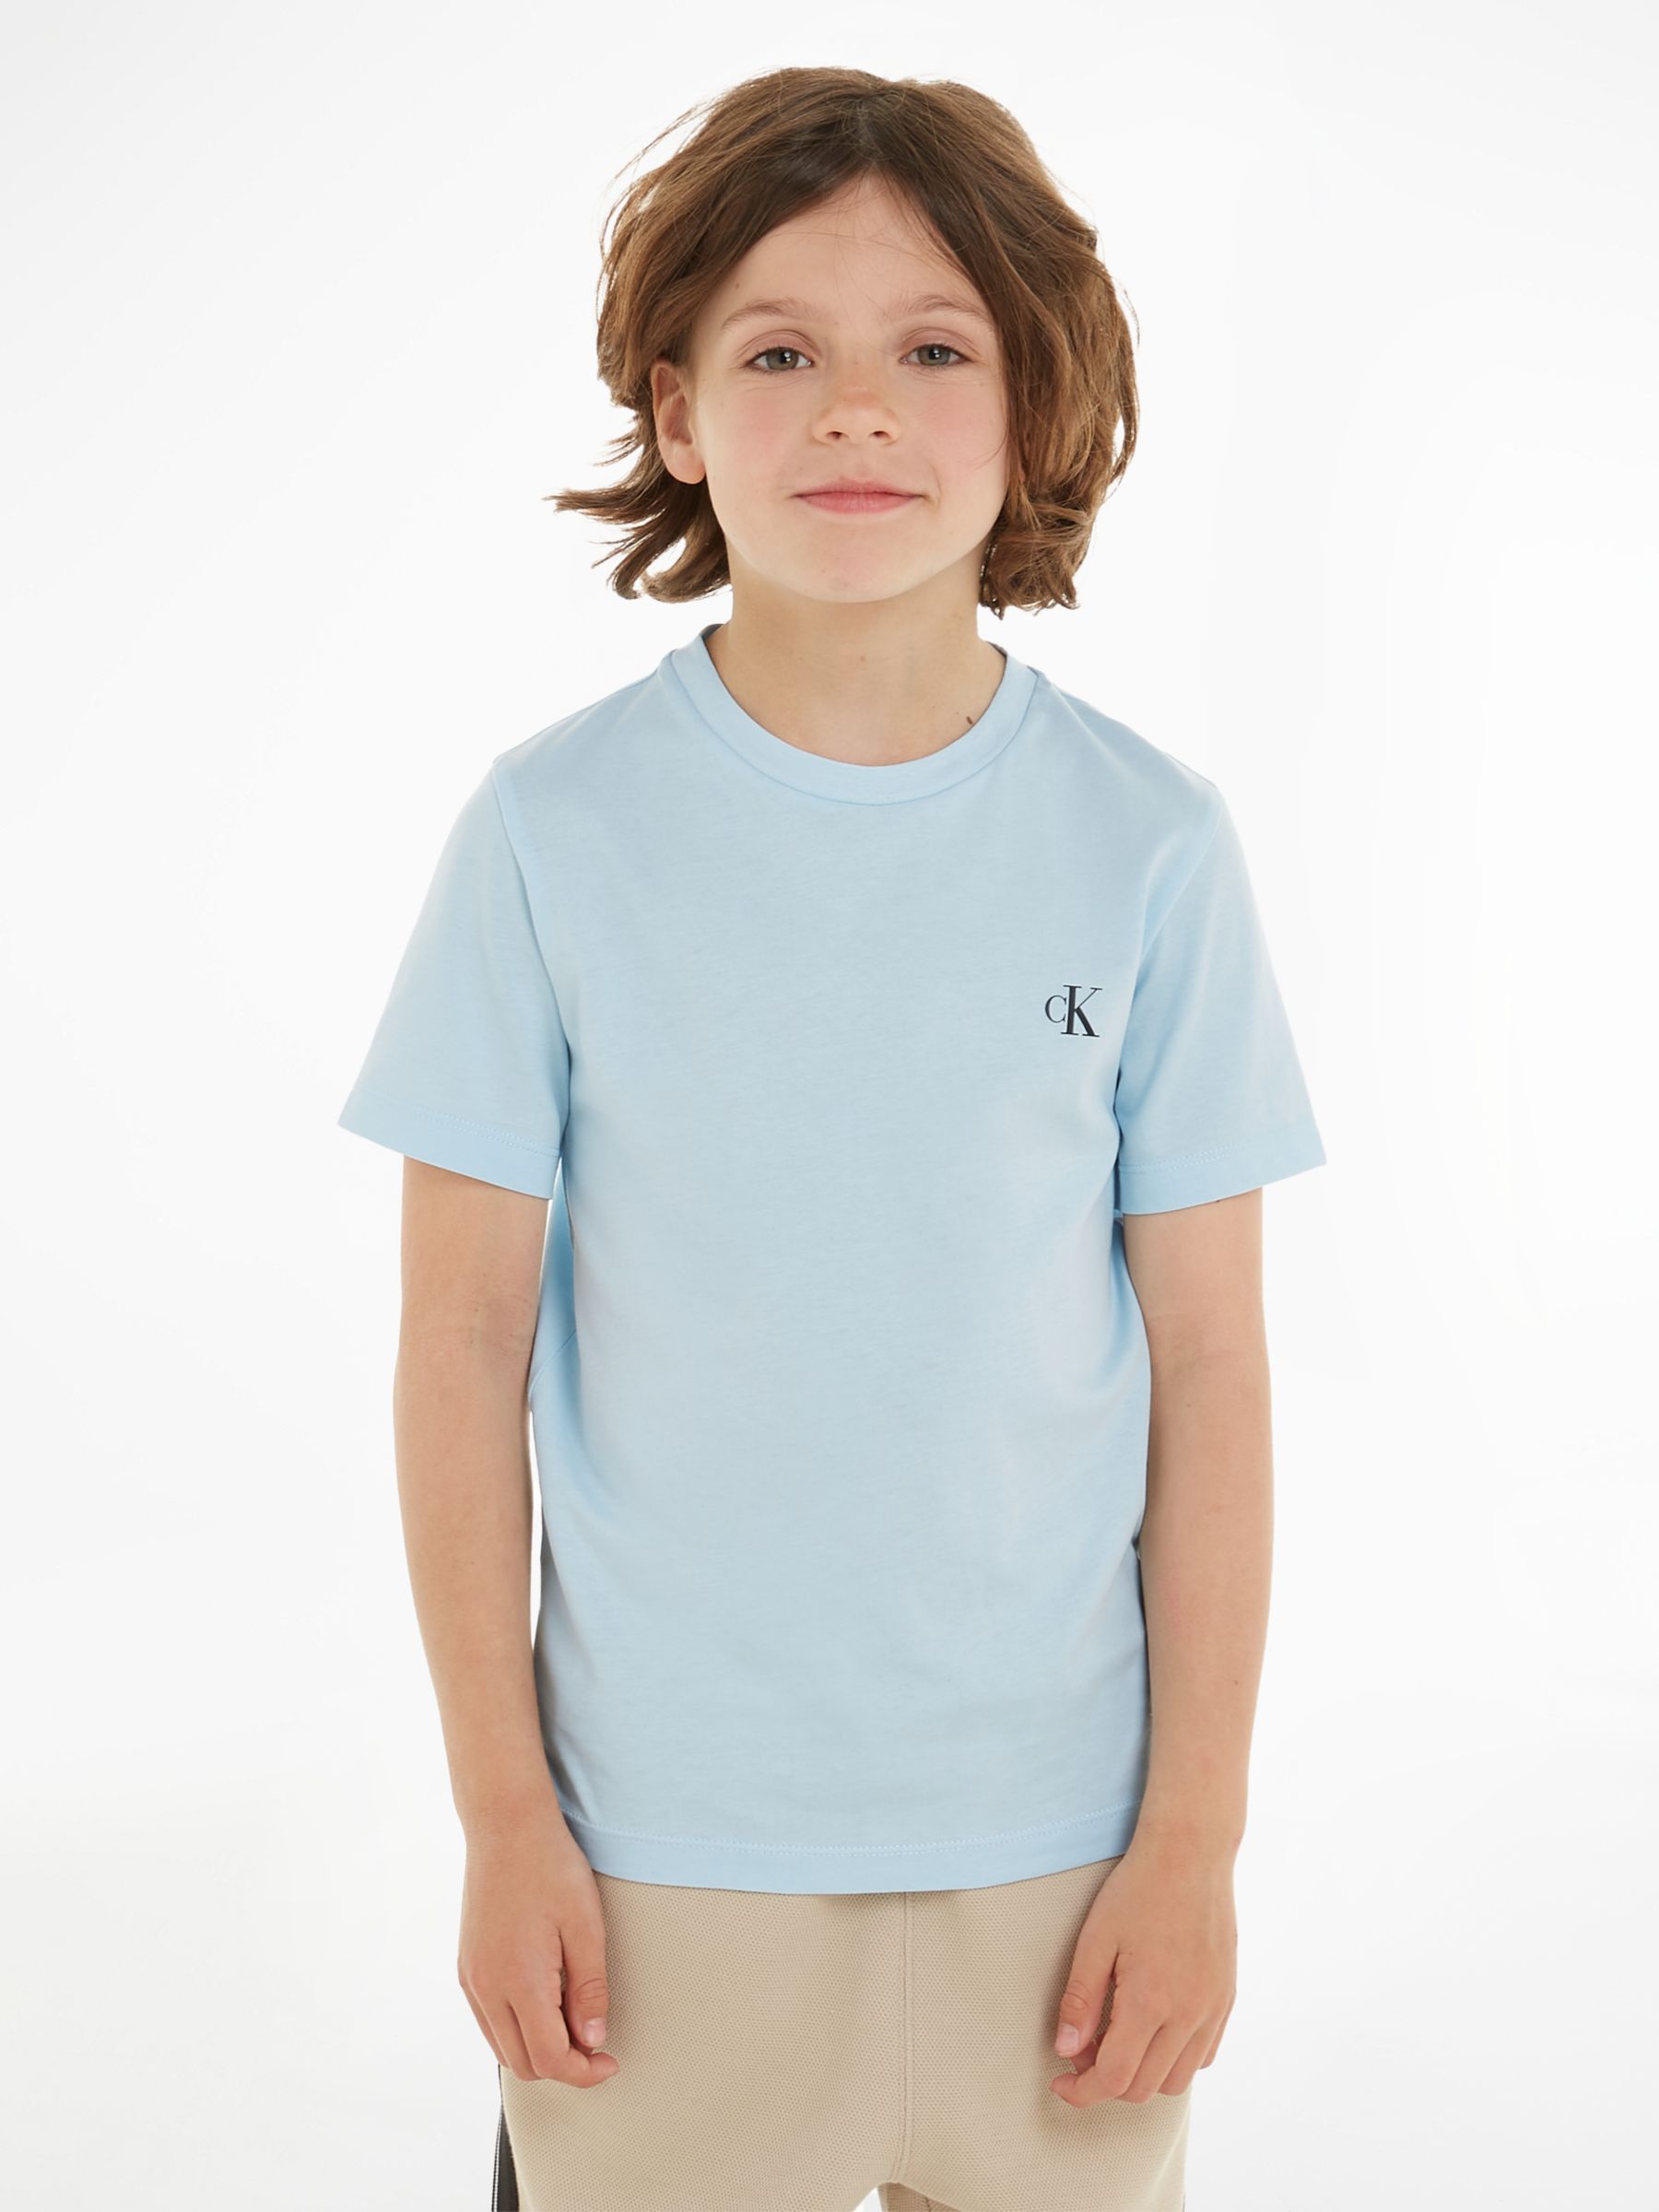 Calvin Klein Kids\' Cotton Monogram Short Sleeve T-Shirts, Pack of 2, Keepsake  Blue/Ck Black at John Lewis & Partners | T-Shirts